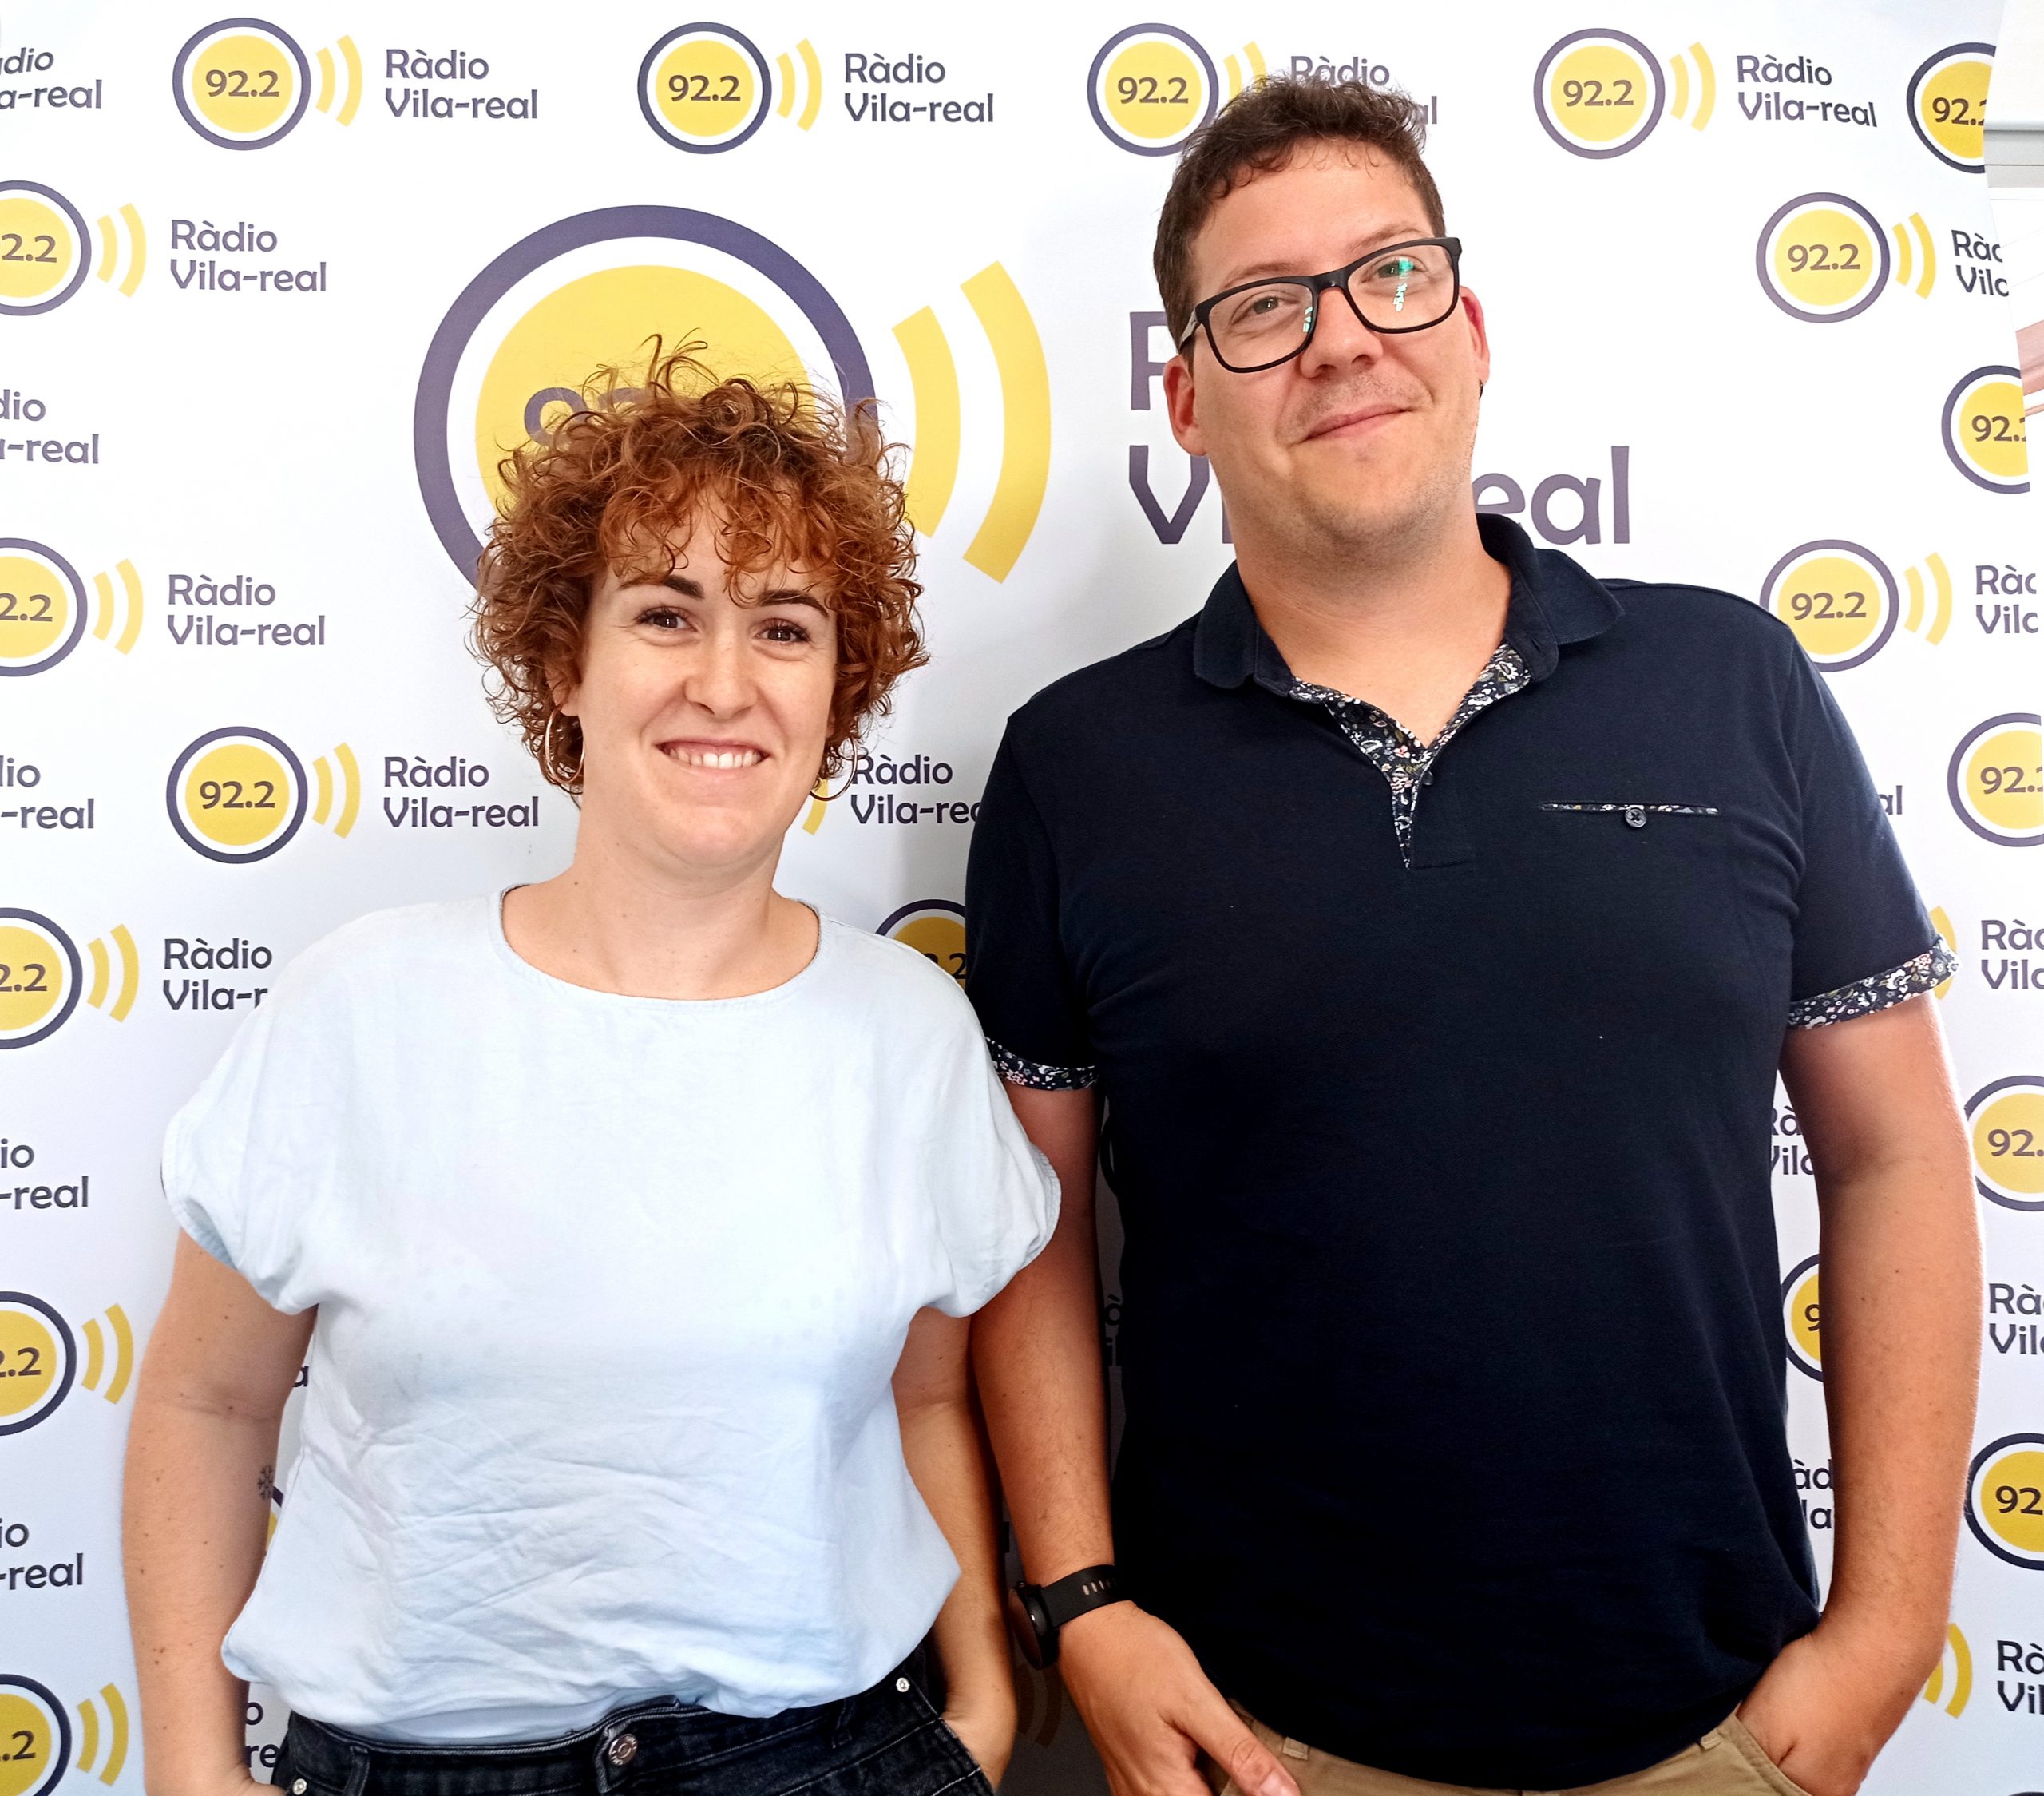 Entrevista al alcalde y la primera teniente alcalde de Vistabella, Jordi Alcón y Laura Tena